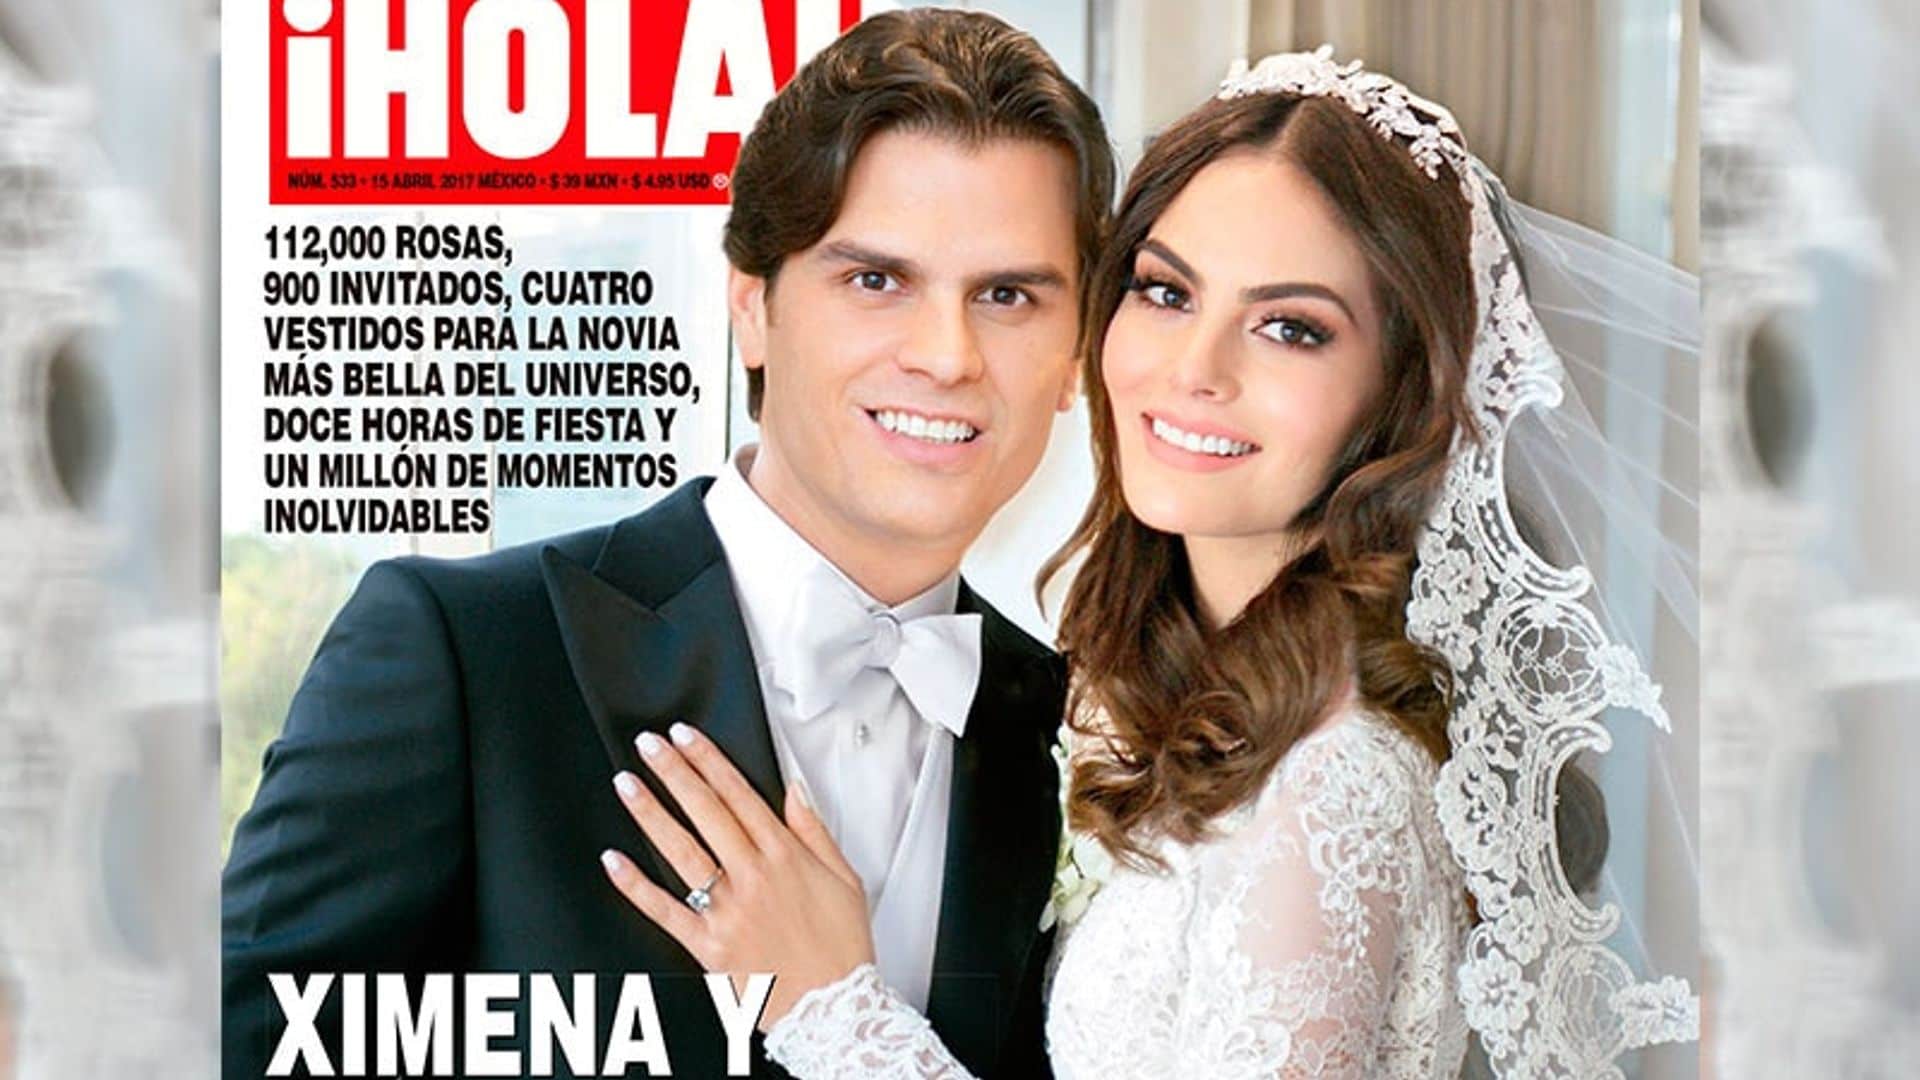 En ¡HOLA!, Ximena Navarrete y Juan Carlos Valladares nos invitan a la boda más fascinante del año